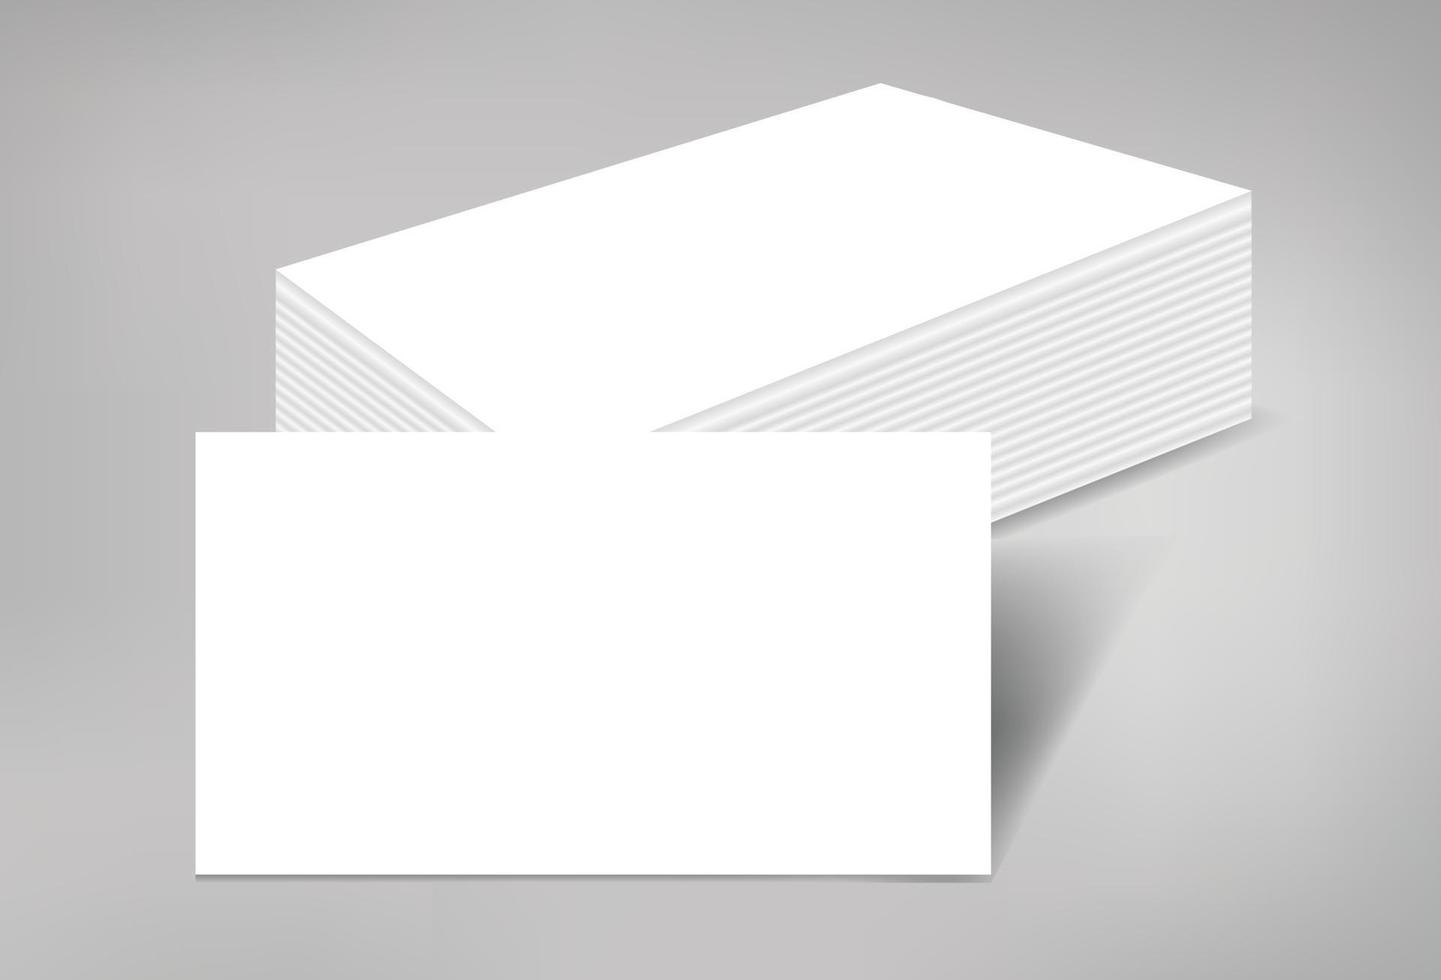 vierge carte de visite pile de pages maquette blanc imprimable papier toile marque identité document publicité présentation entreprise entreprise isolé illustration réaliste modèle vecteur